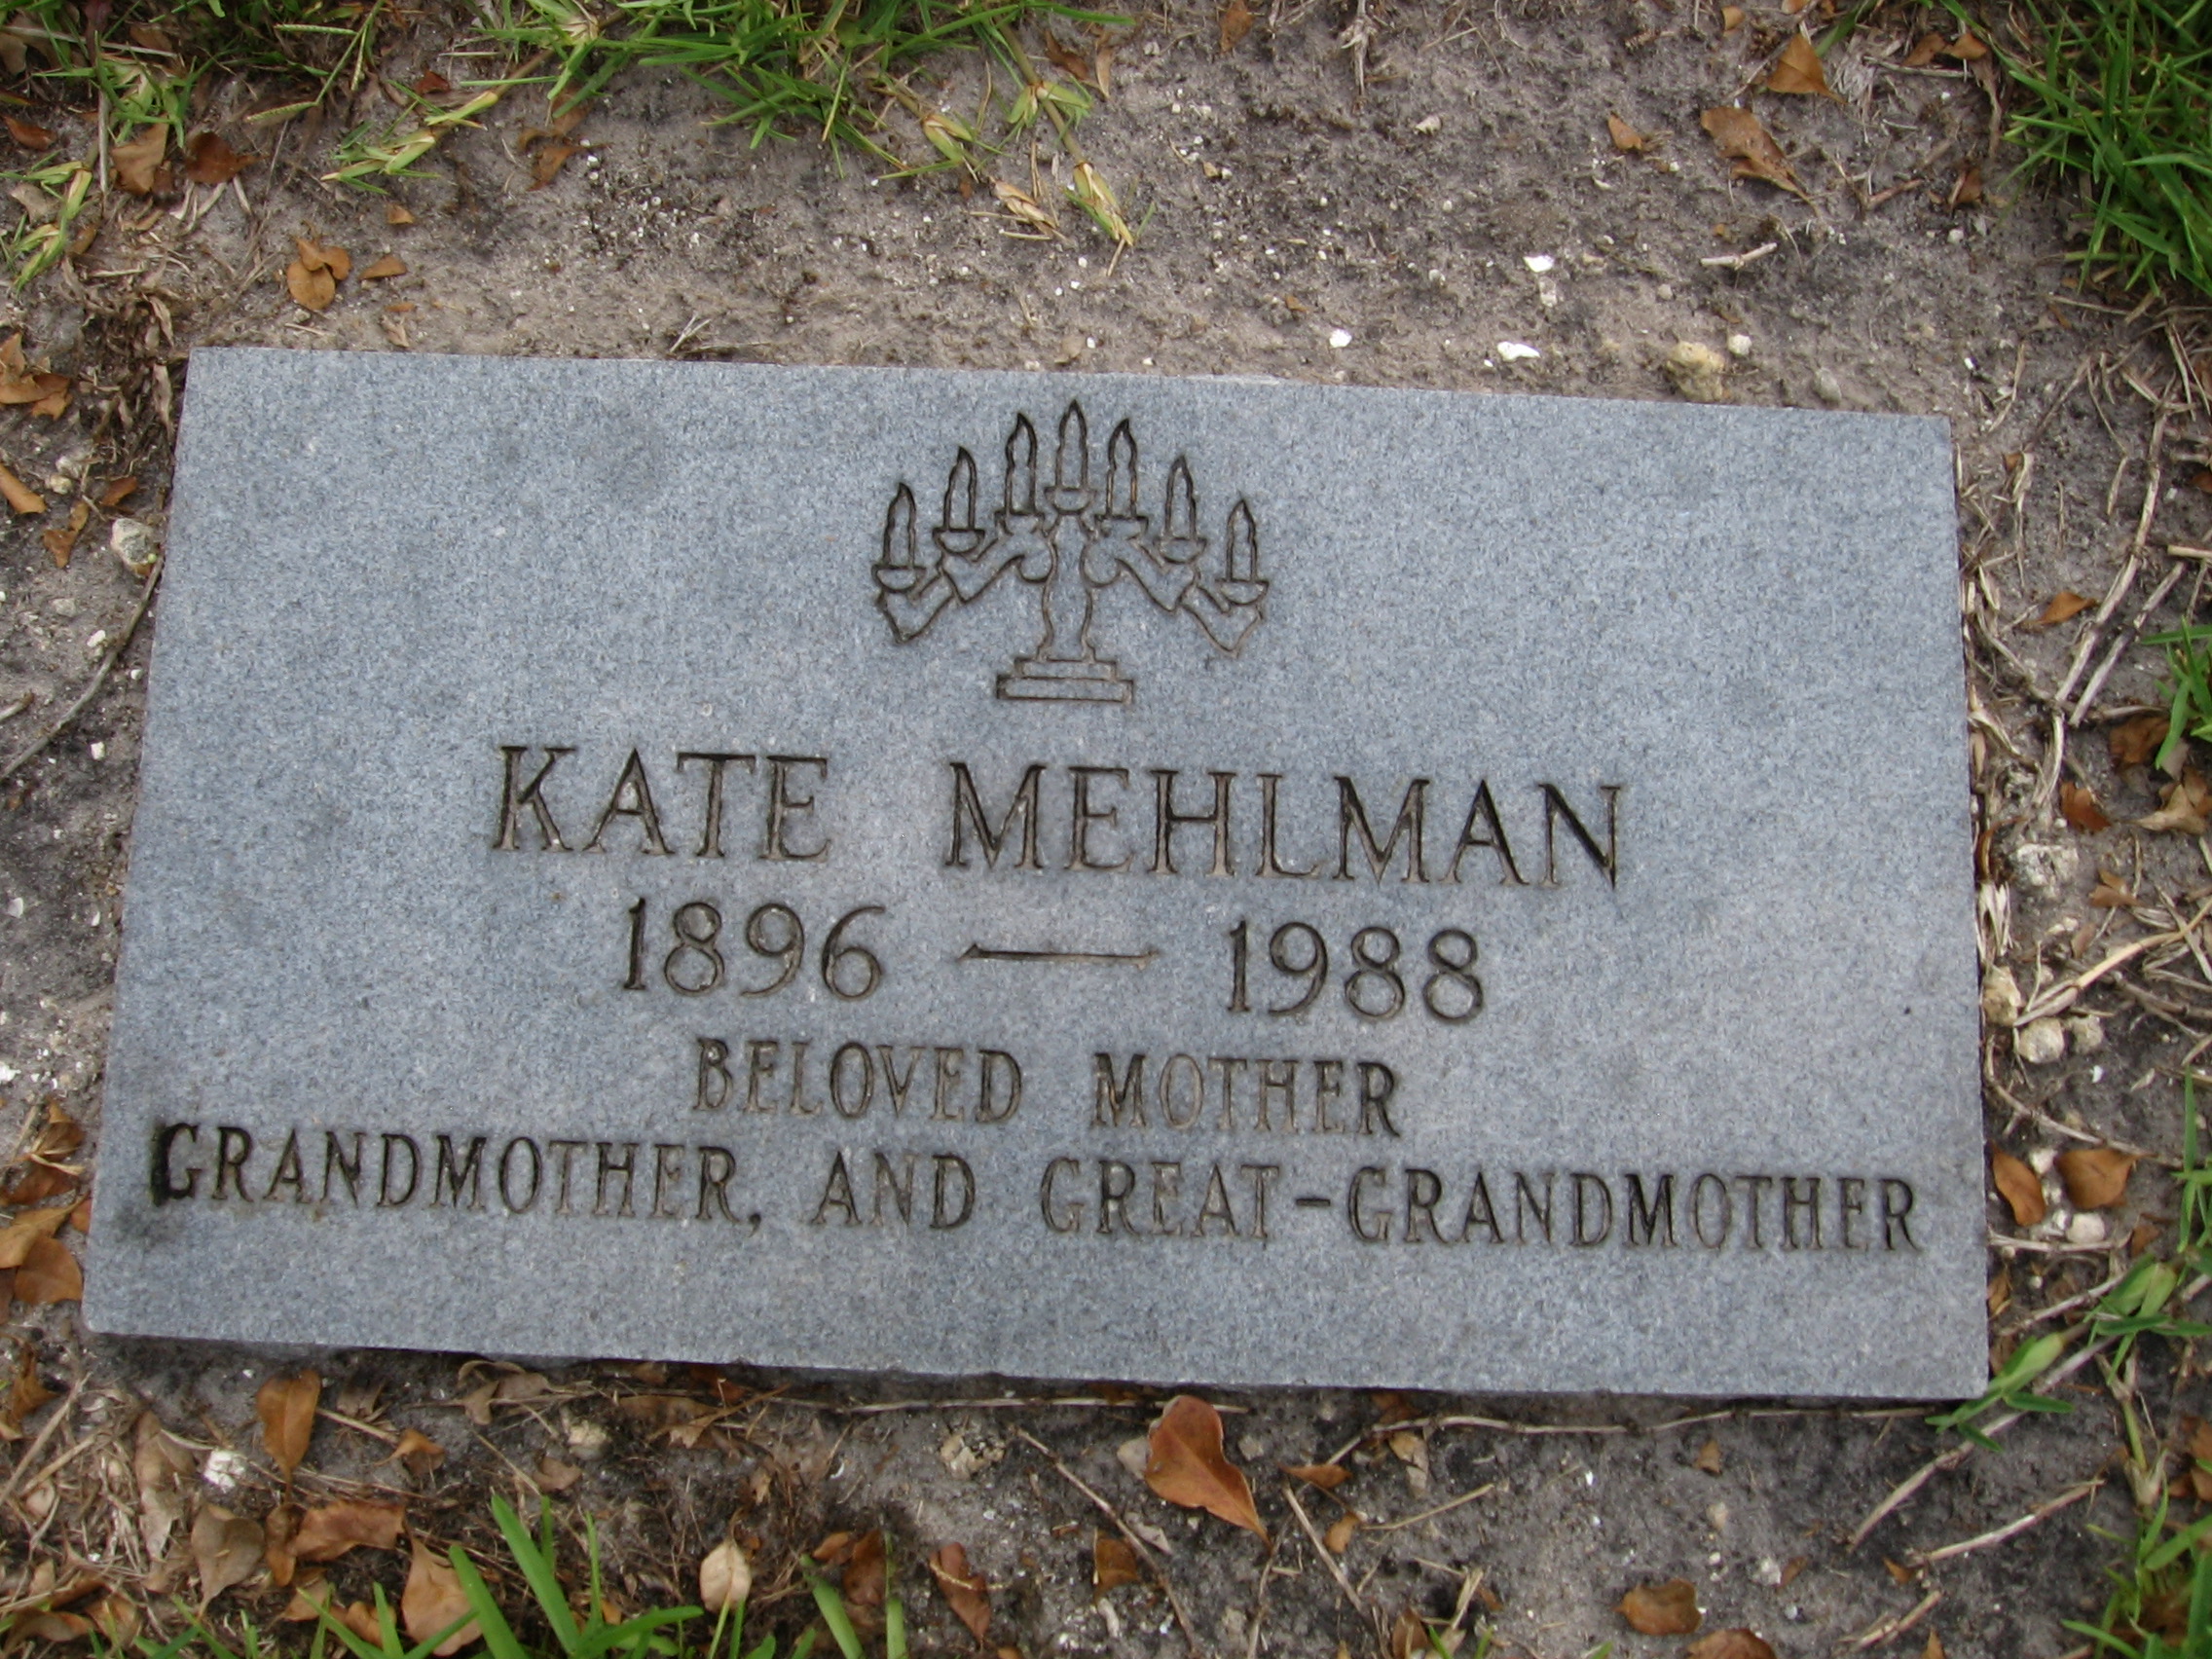 Kate Mehlman